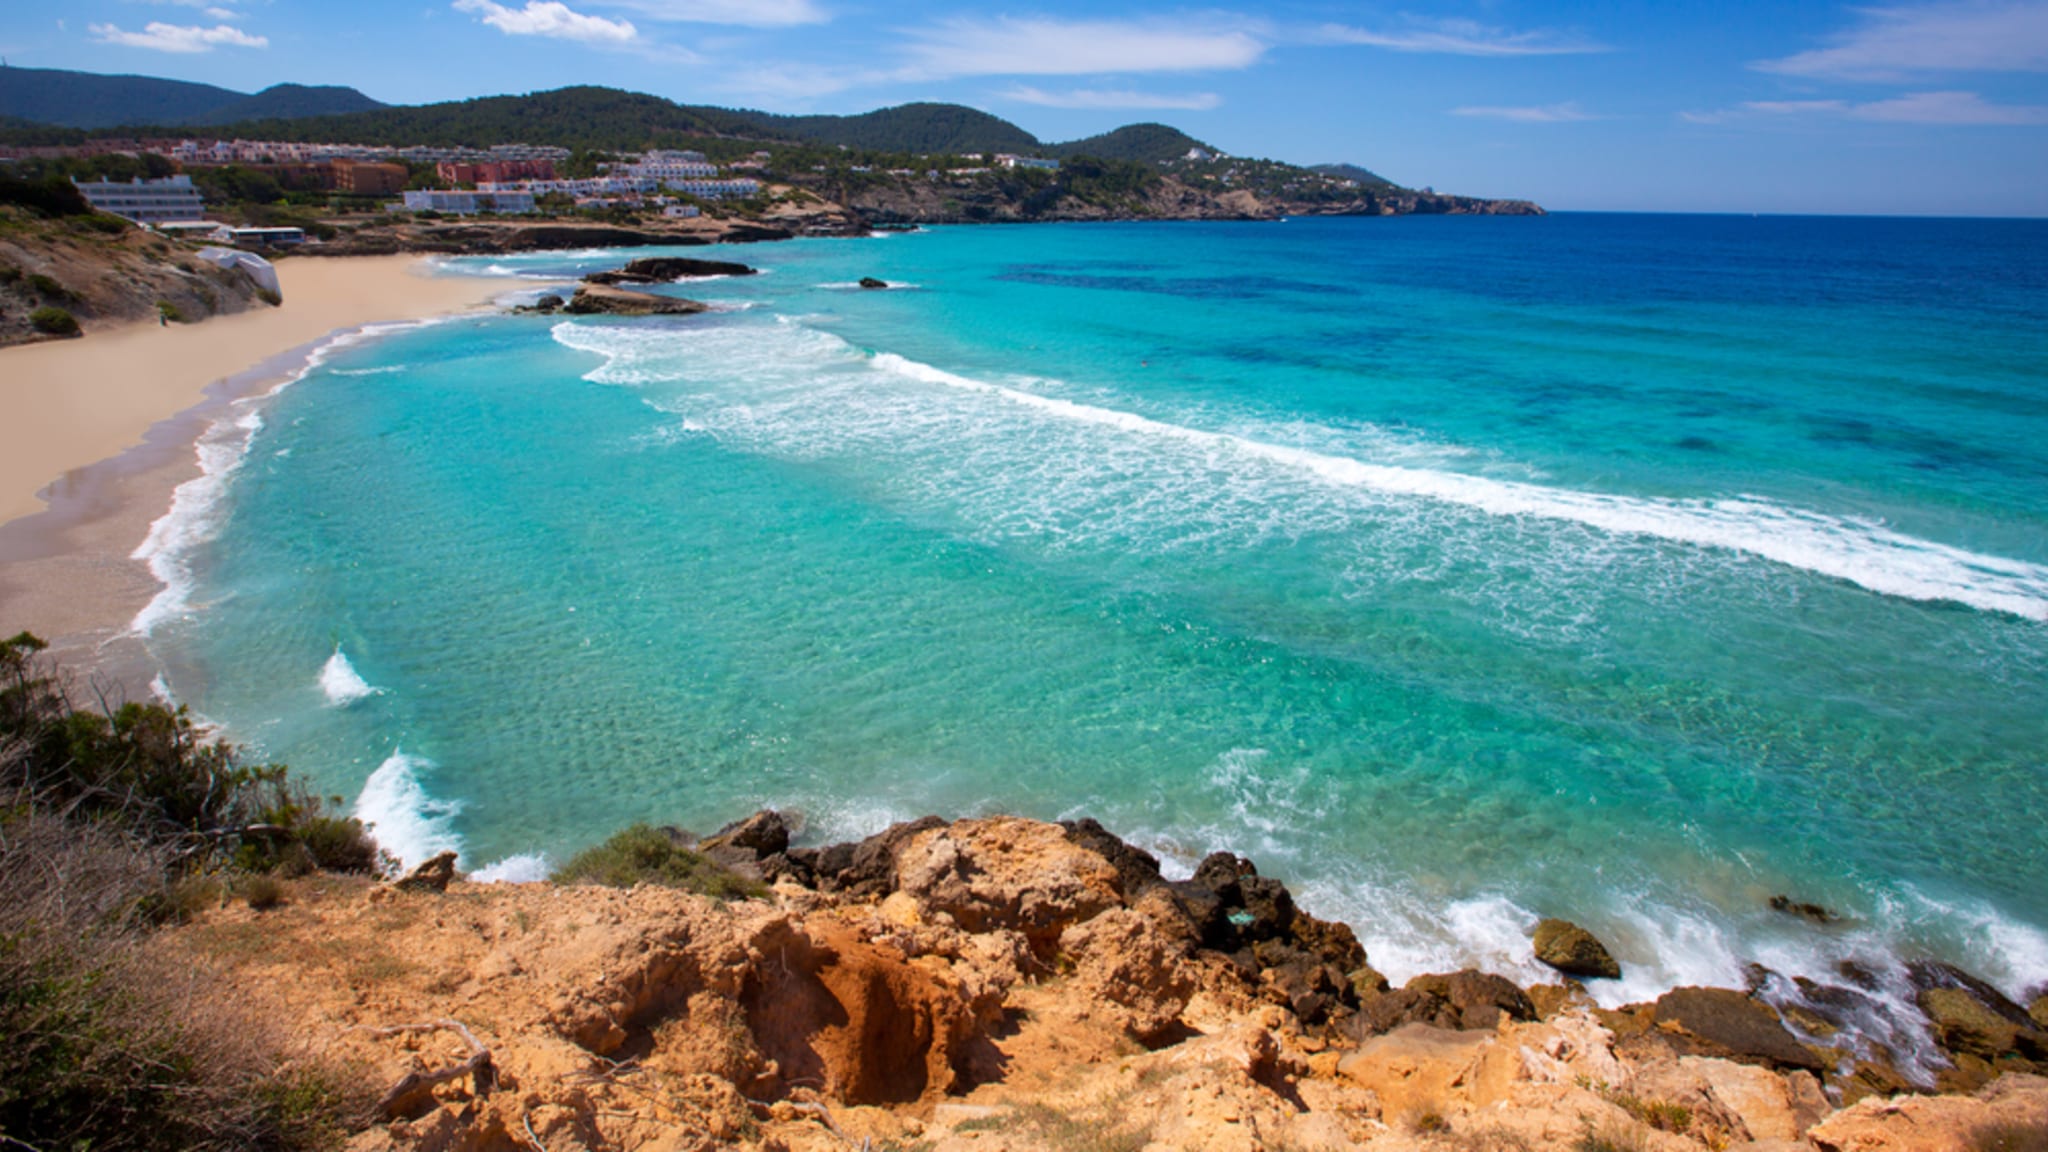 Wellen am Strand von Cala Tarida auf Ibiza